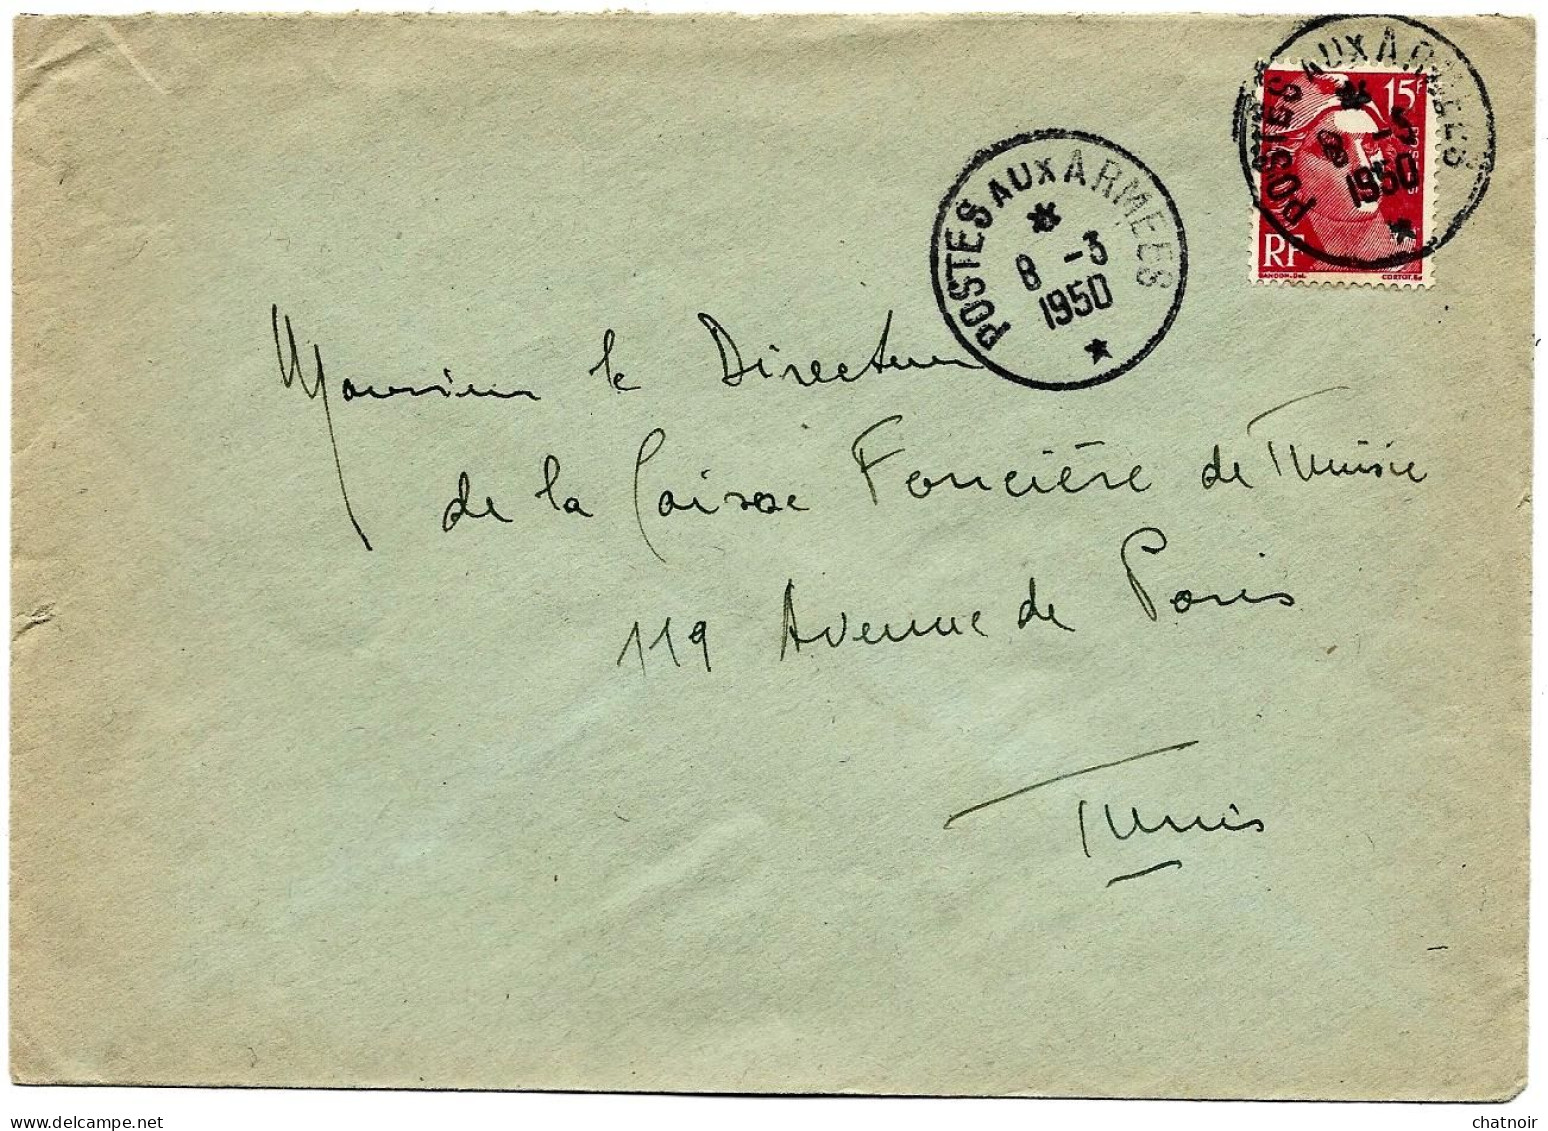 Enveloppe Oblit  POSTES  AUX  ARMEES  Sur 15f GANDON  1950  Pour La Tunisie - Militärstempel Ab 1900 (ausser Kriegszeiten)